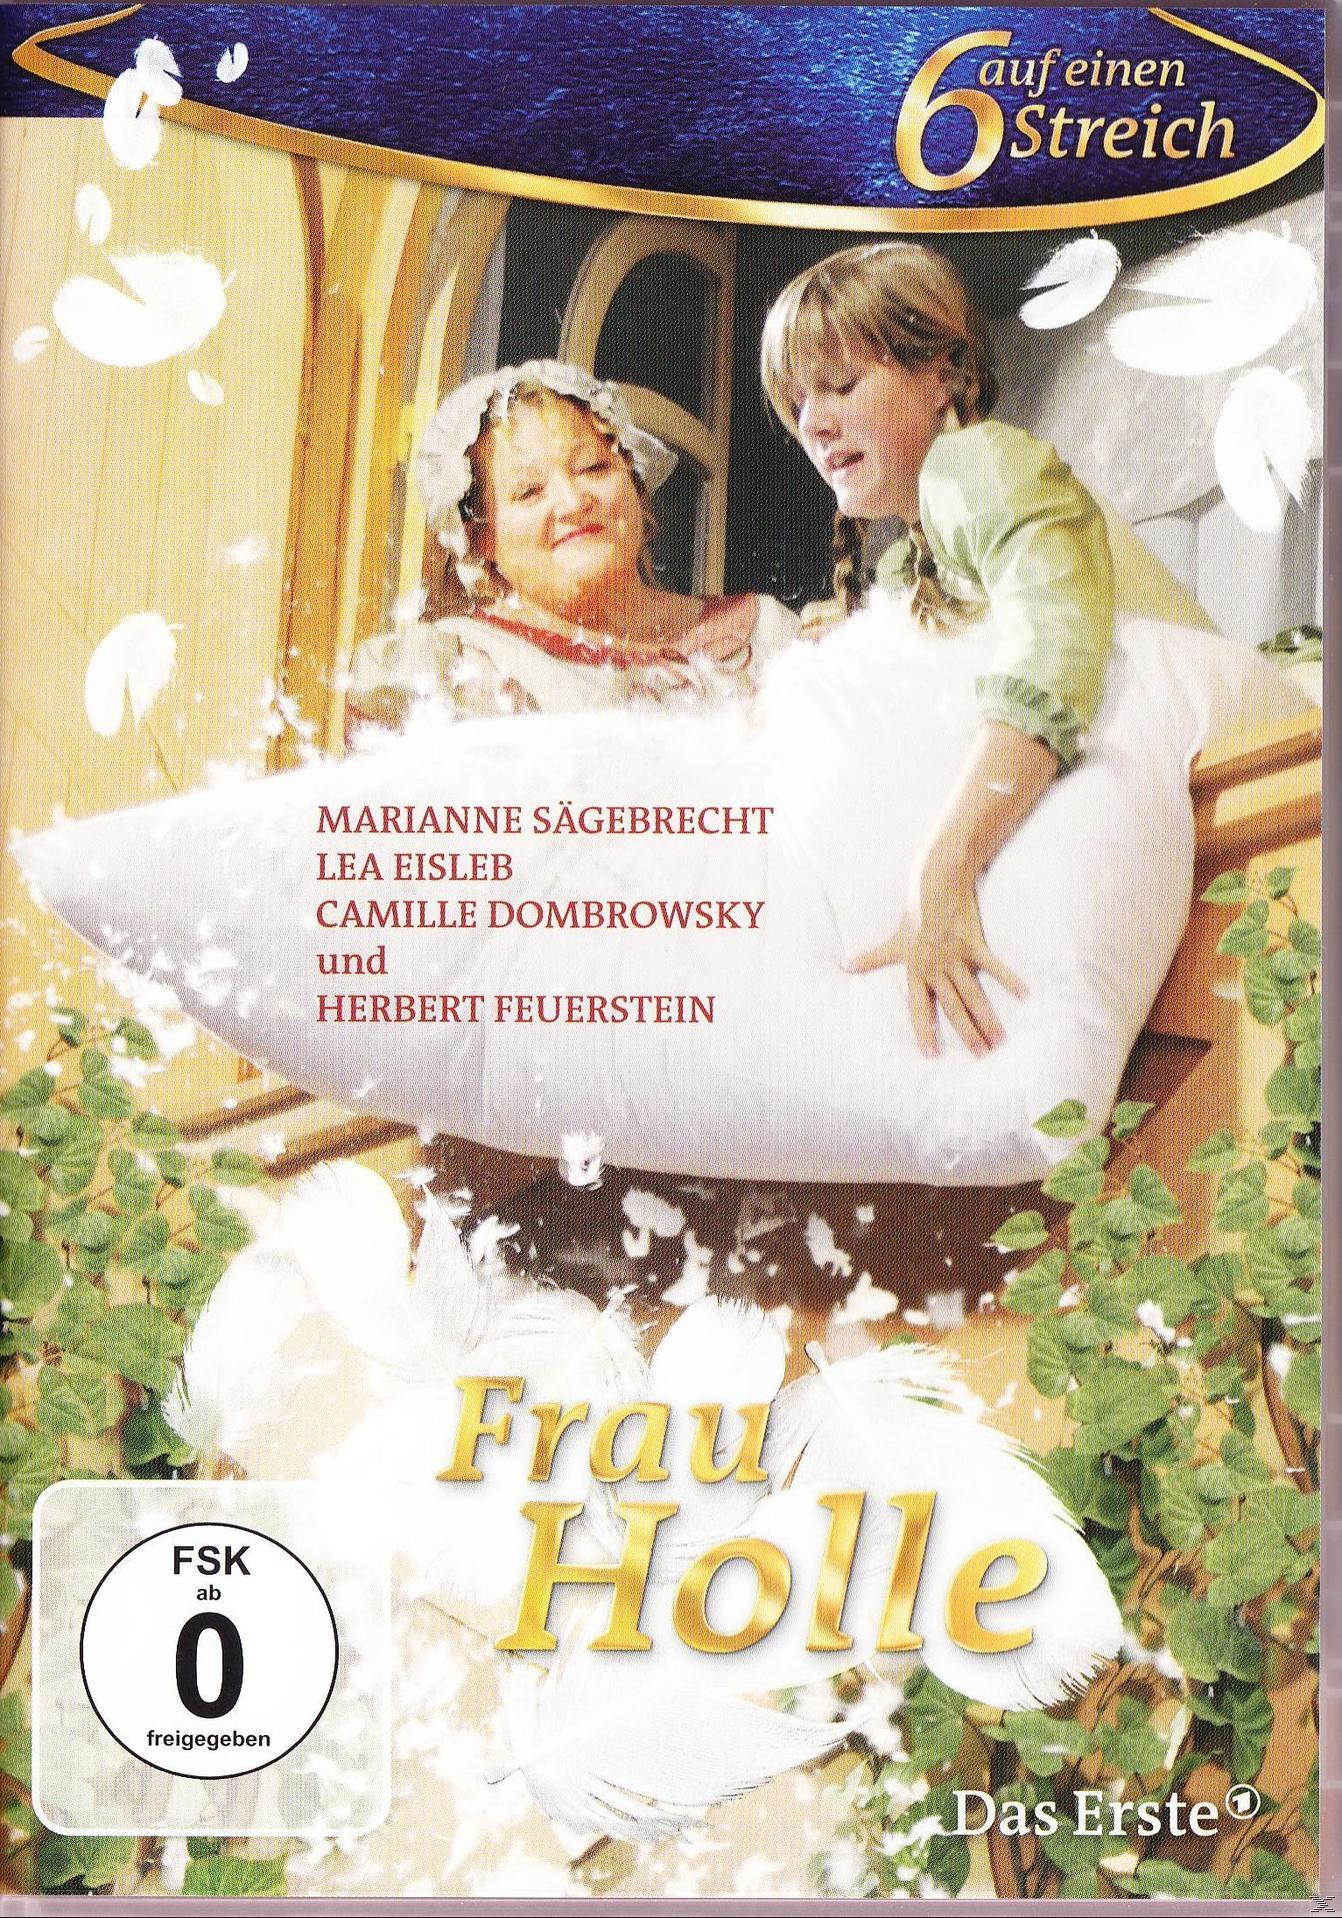 STREICH SECHS DVD - 1 AUF FRAU HOLLE EINEN